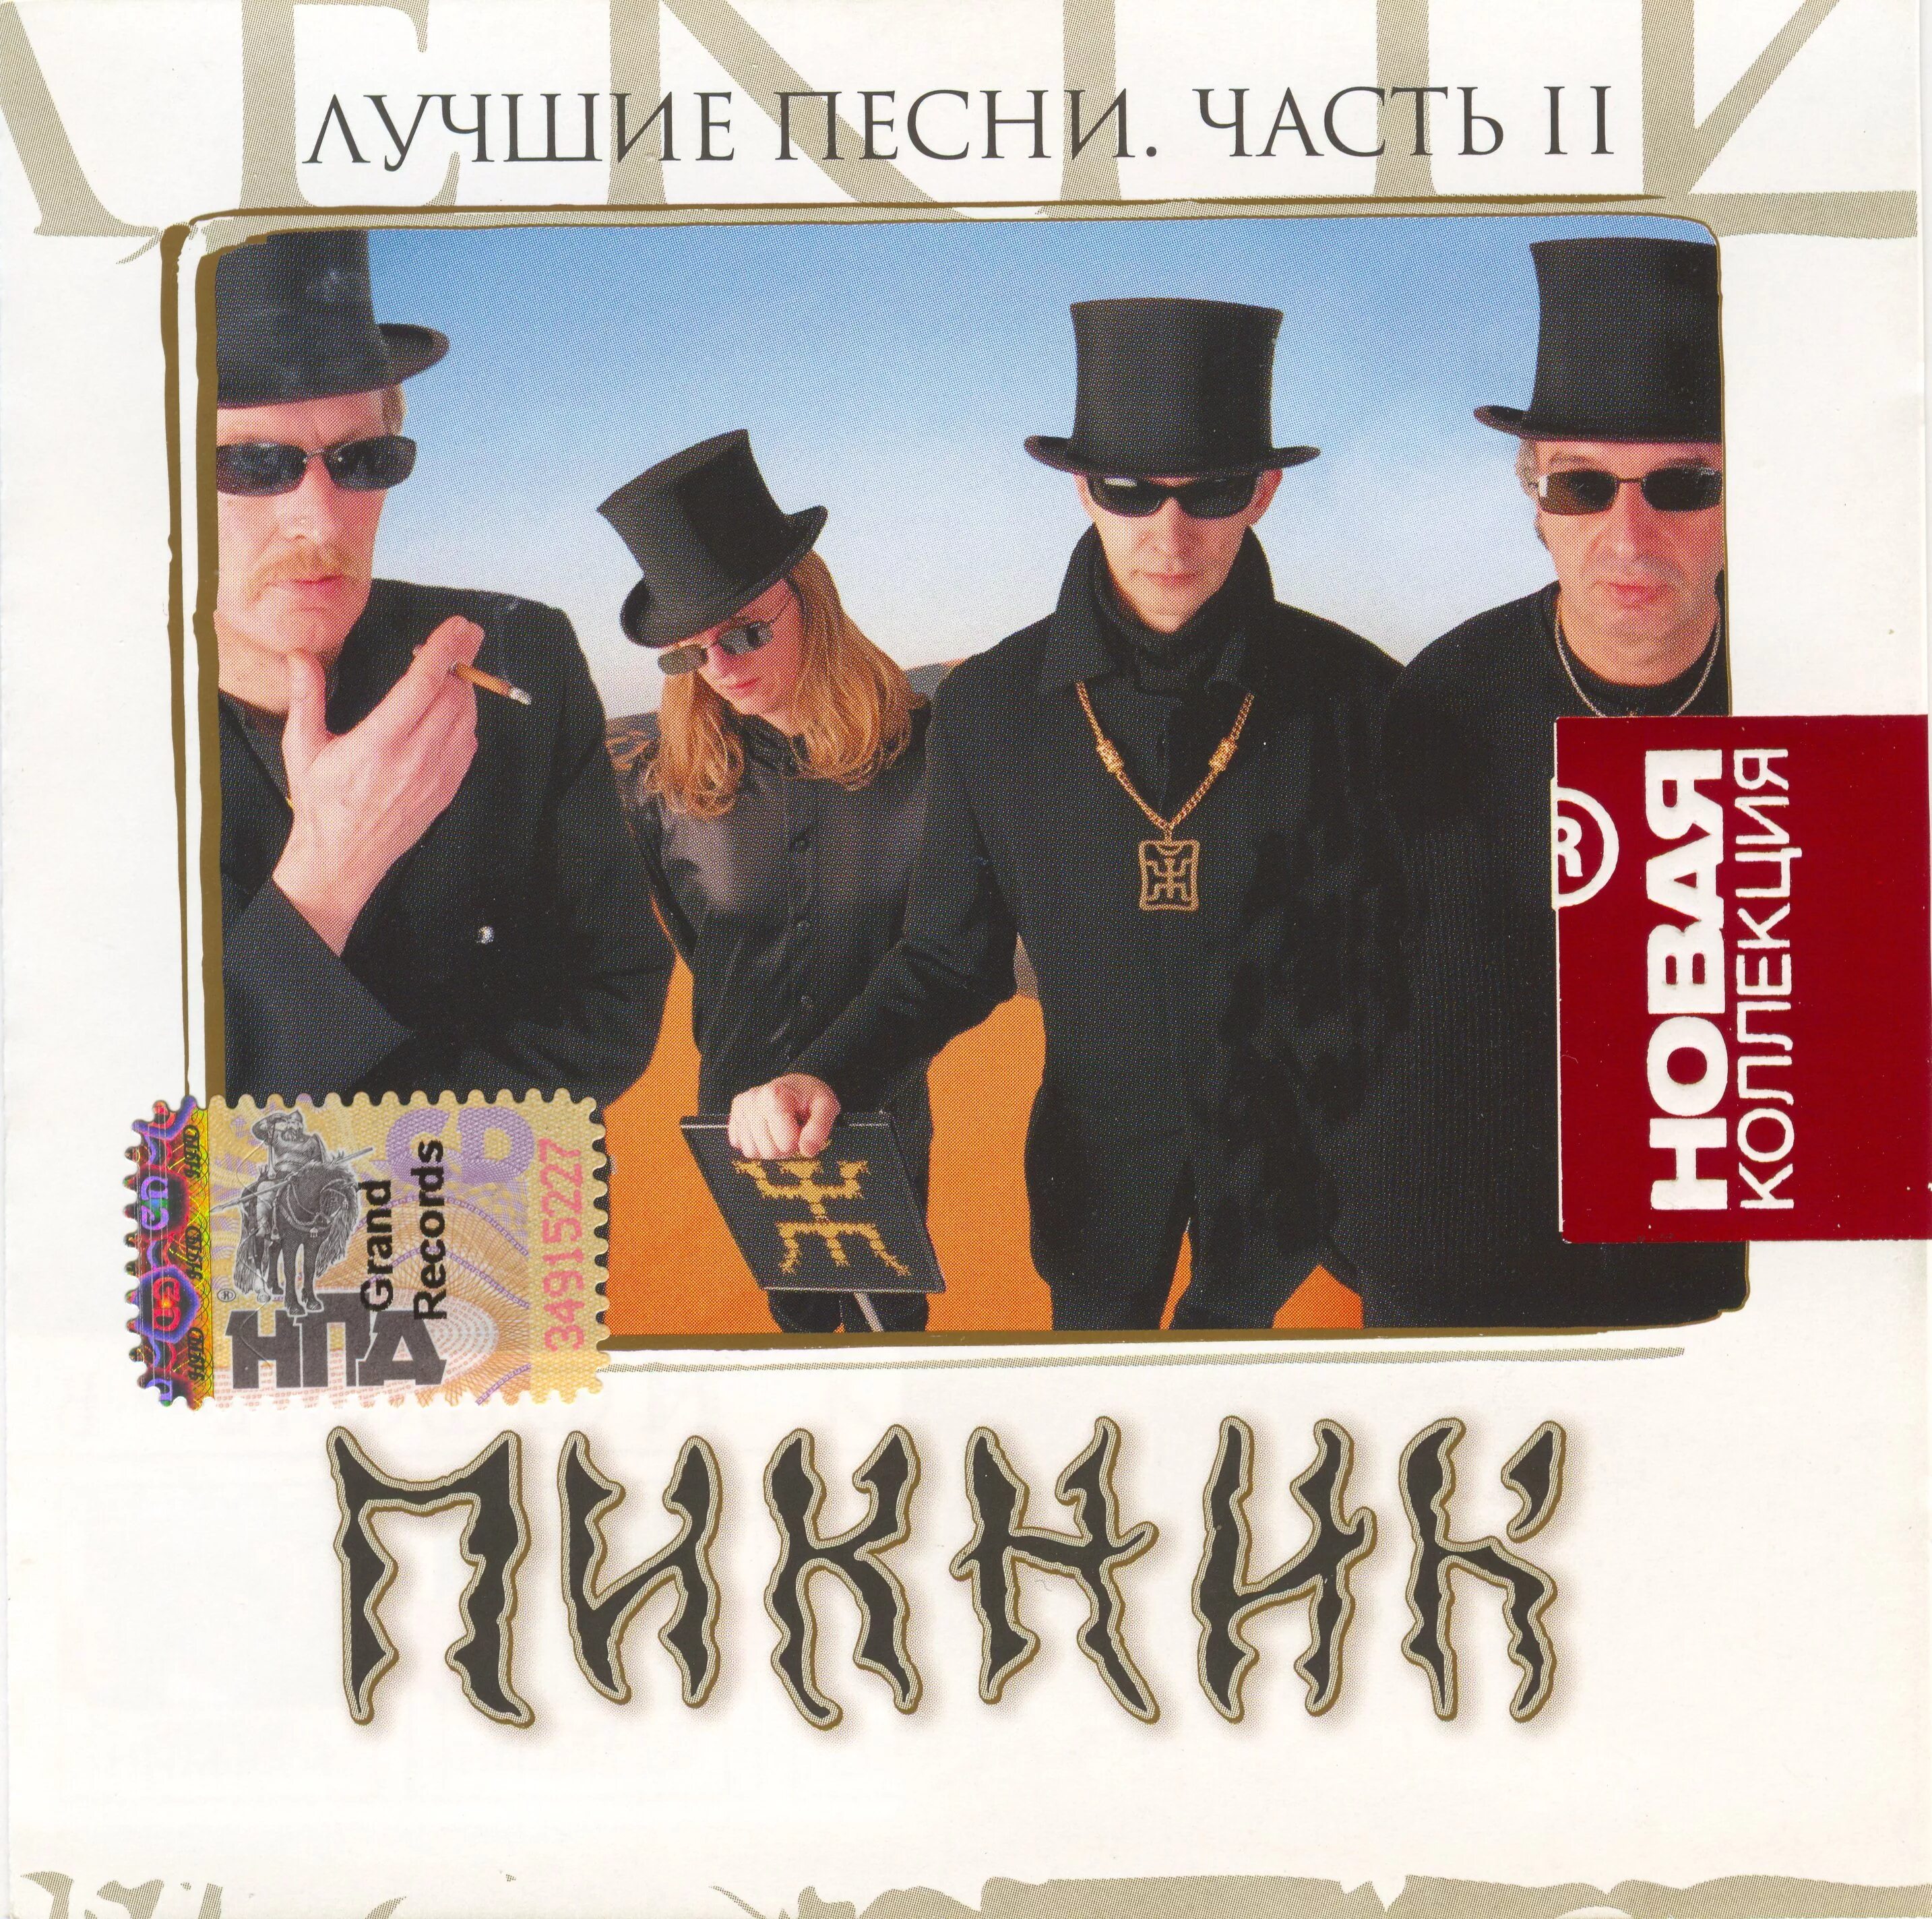 Группа пикник 2000 год. Пикник - 2007 - новая коллекция. Лучшие песни CD. Пикник лучшие песни. Пикник обложки.